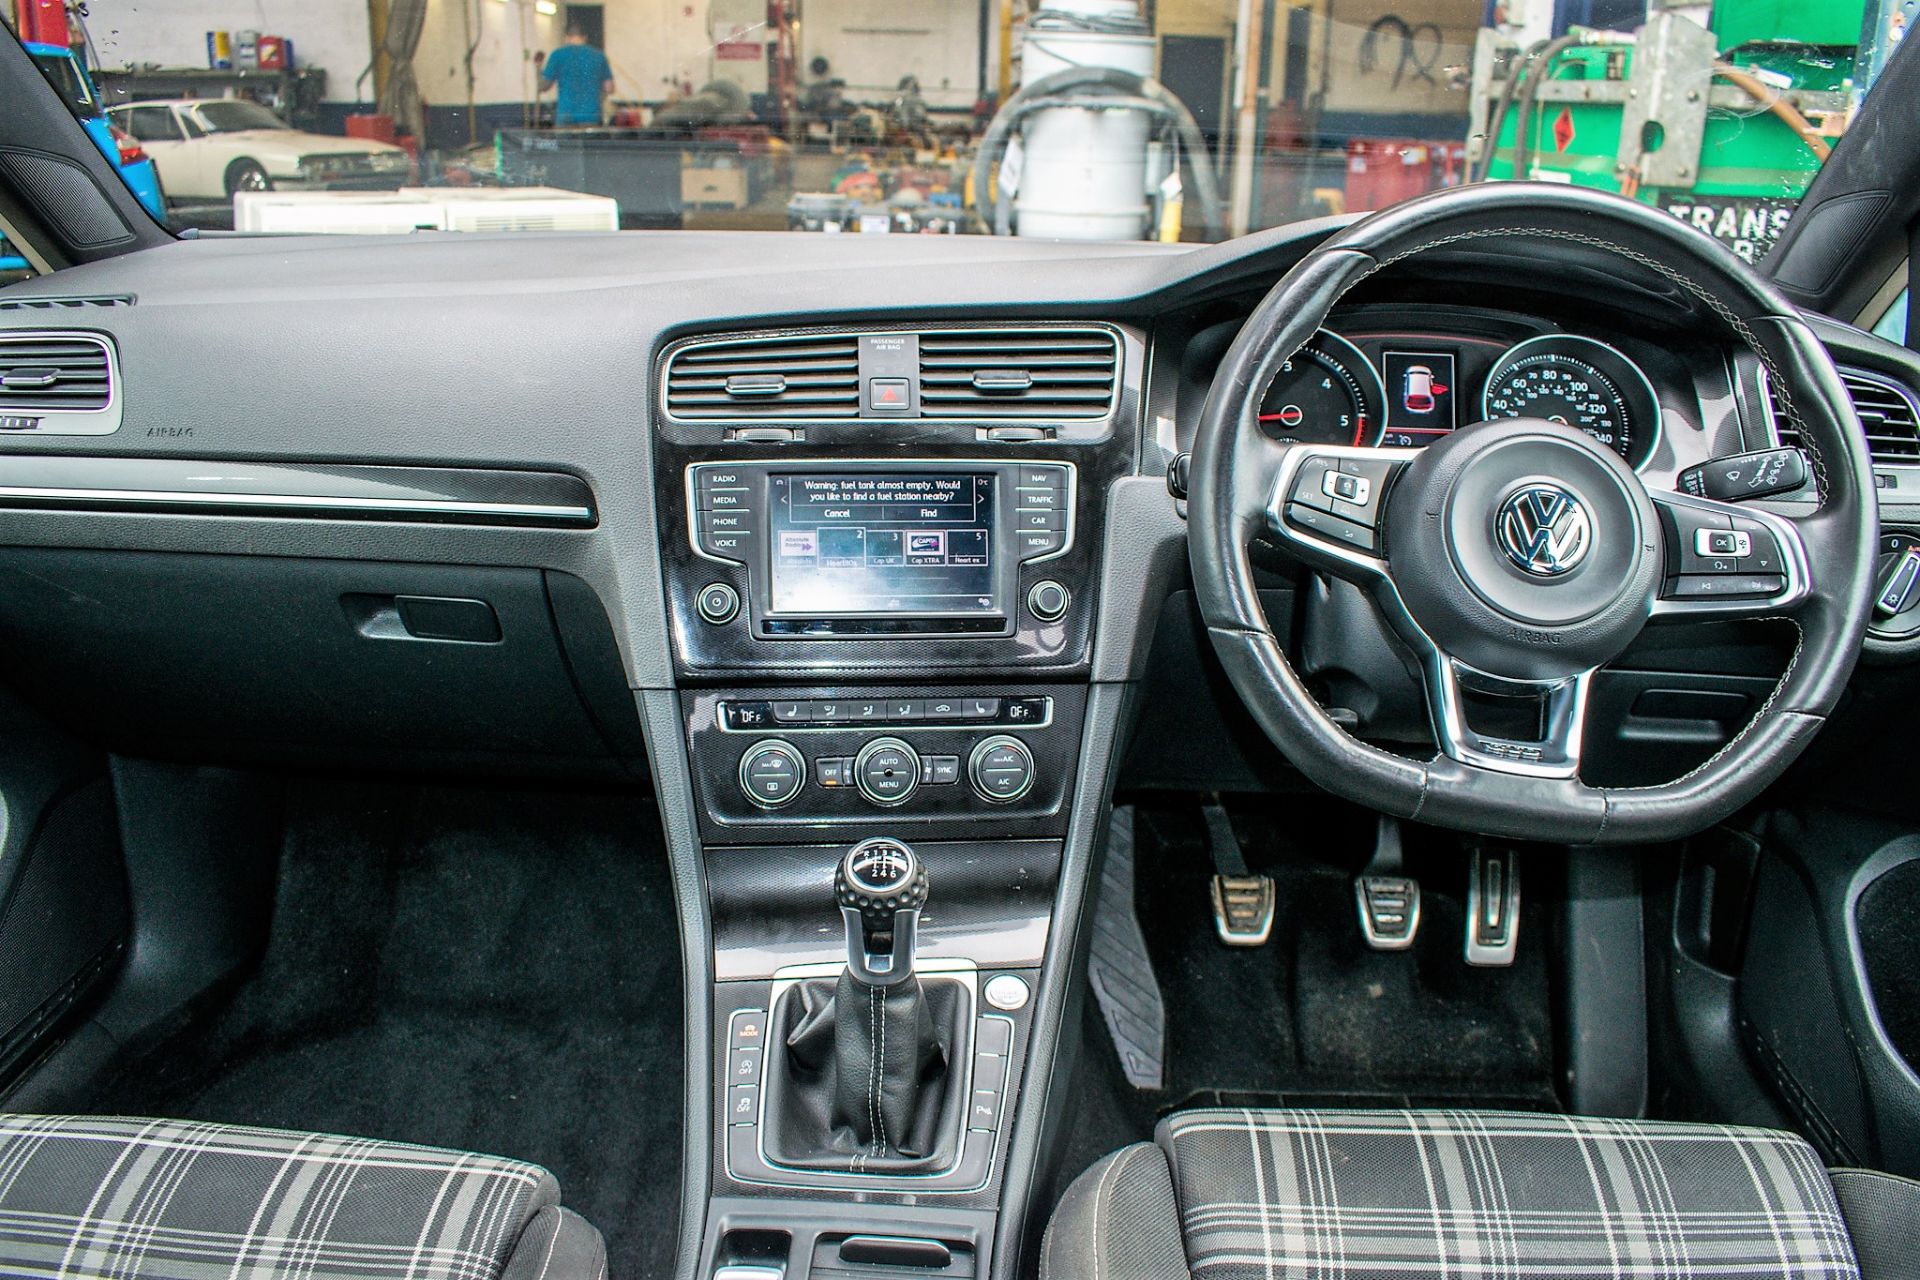 Volkswagen Golf GTD 2.0 5 door hatchback car Registration Number: VE66 DMY Date of Registration: - Bild 11 aus 13